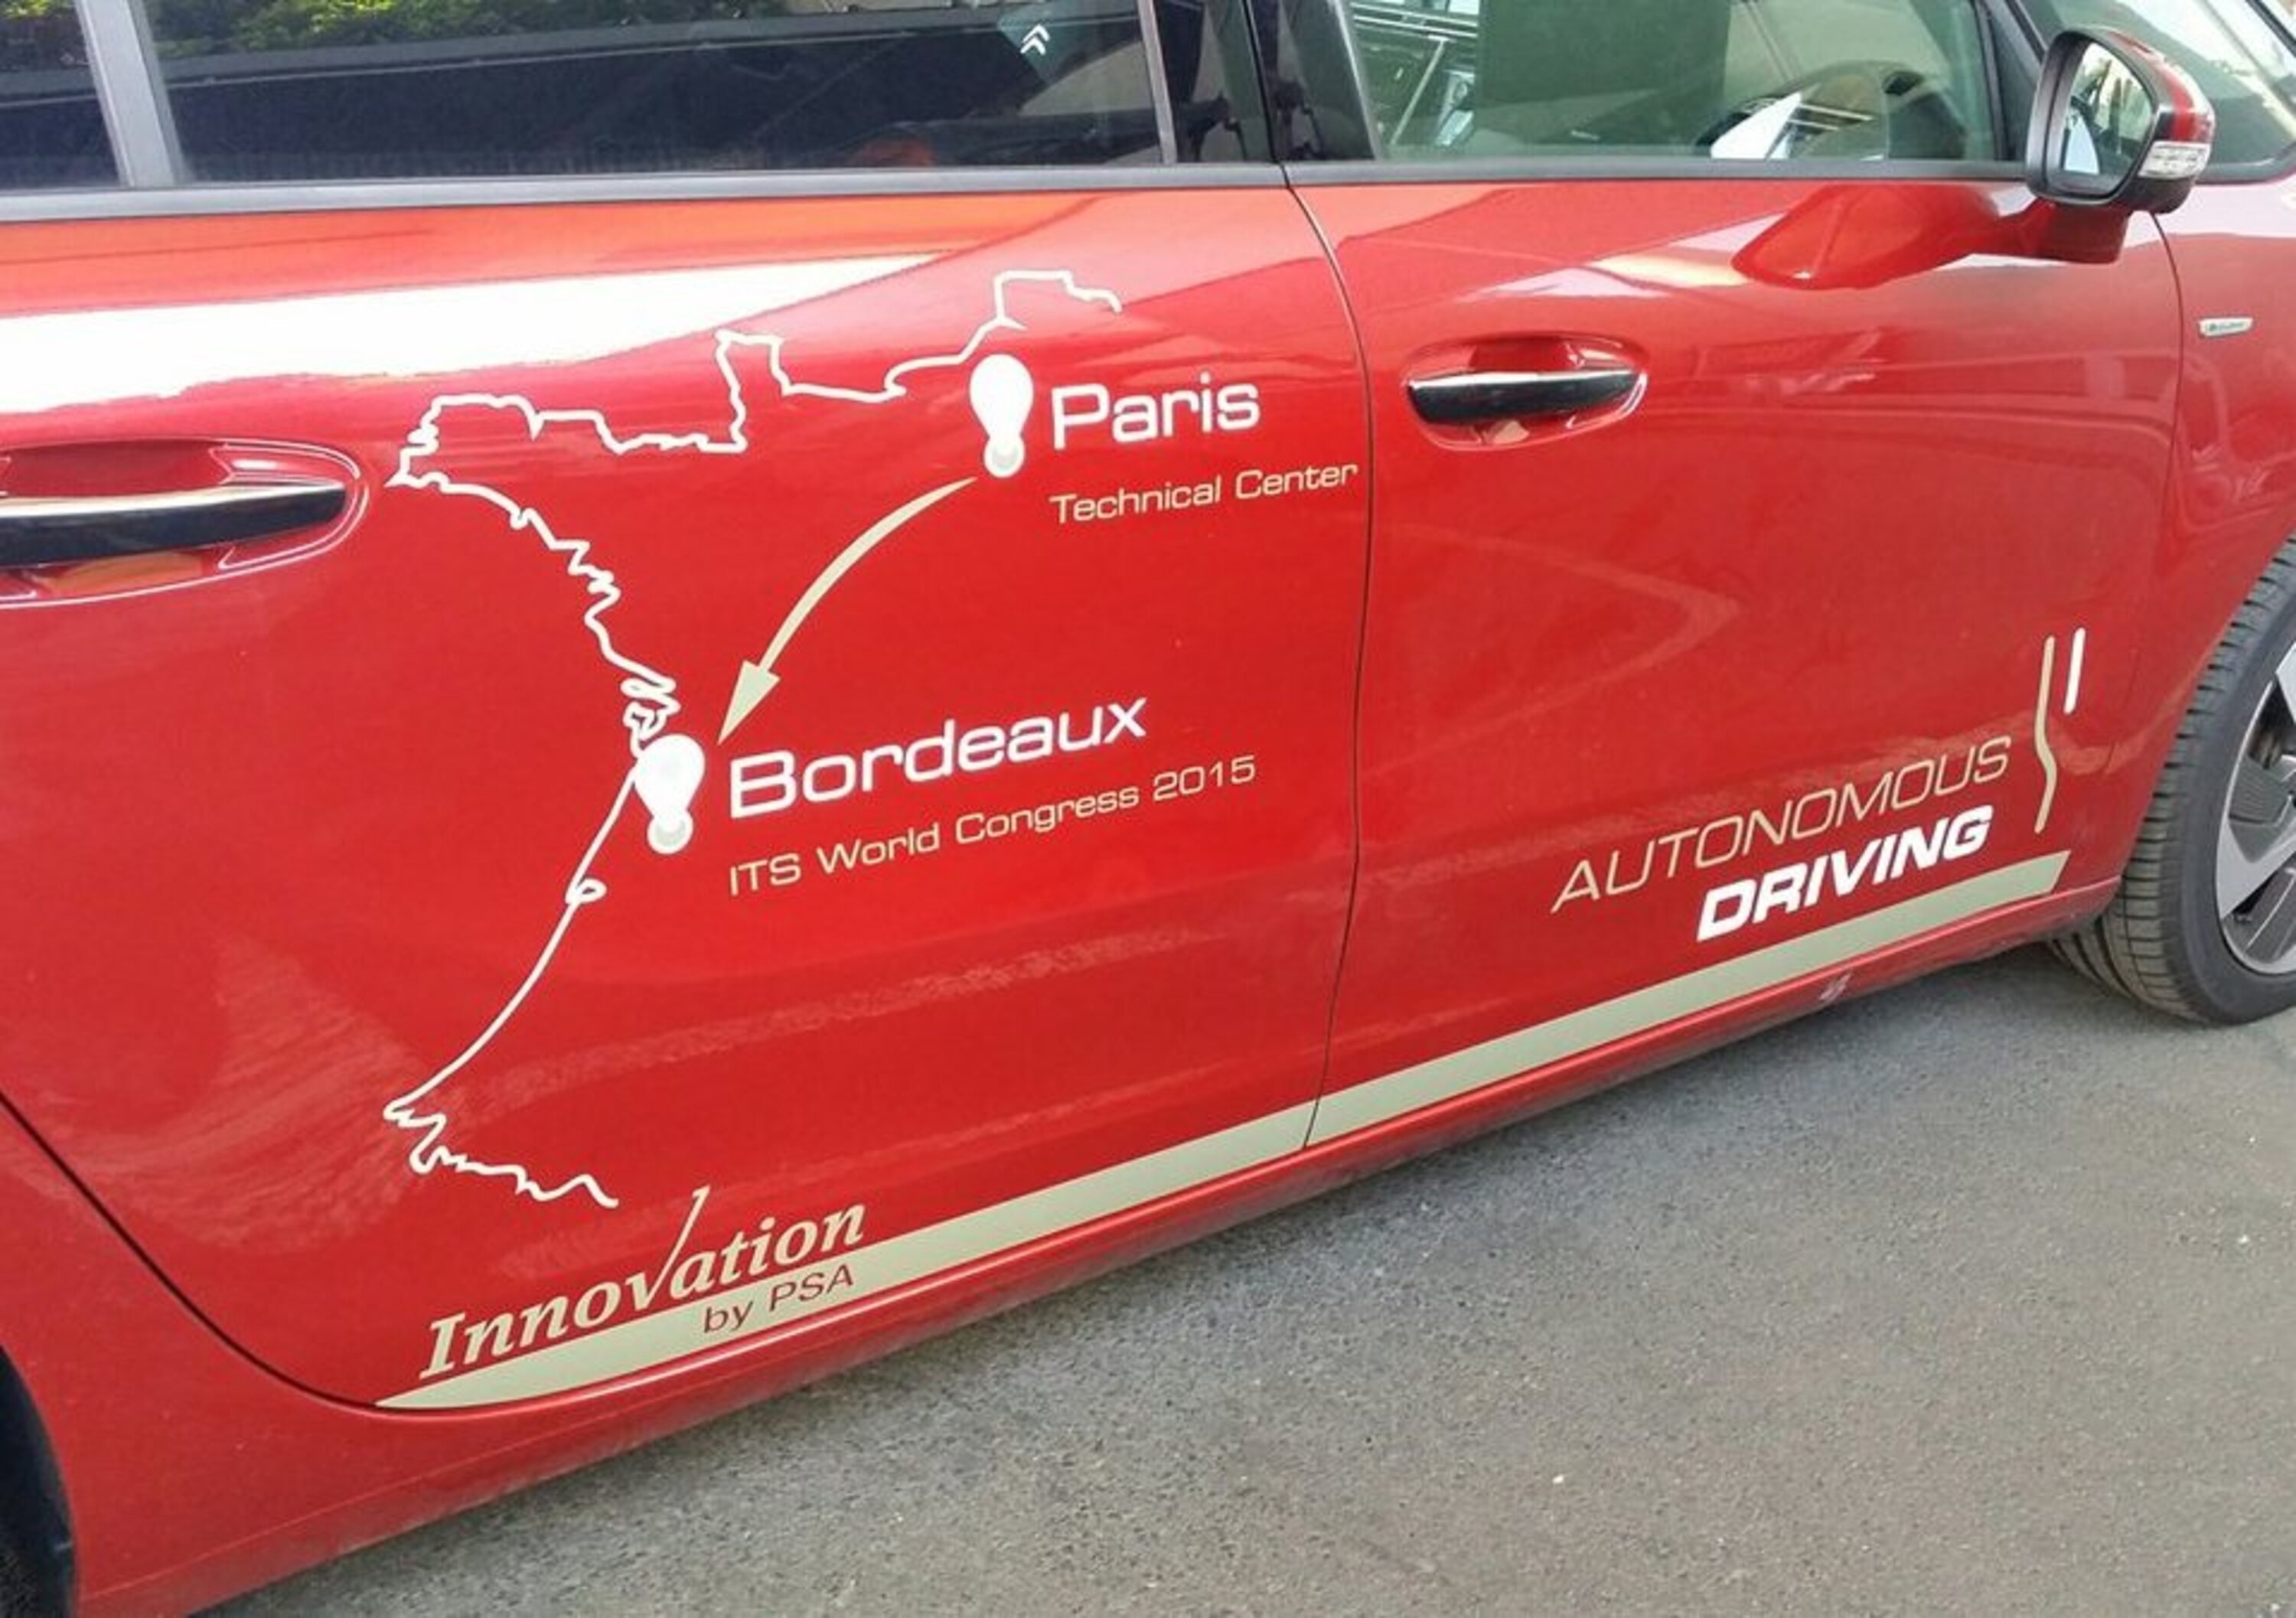 Guida autonoma: il prototipo di PSA va senza pilota da Parigi a Bordeaux